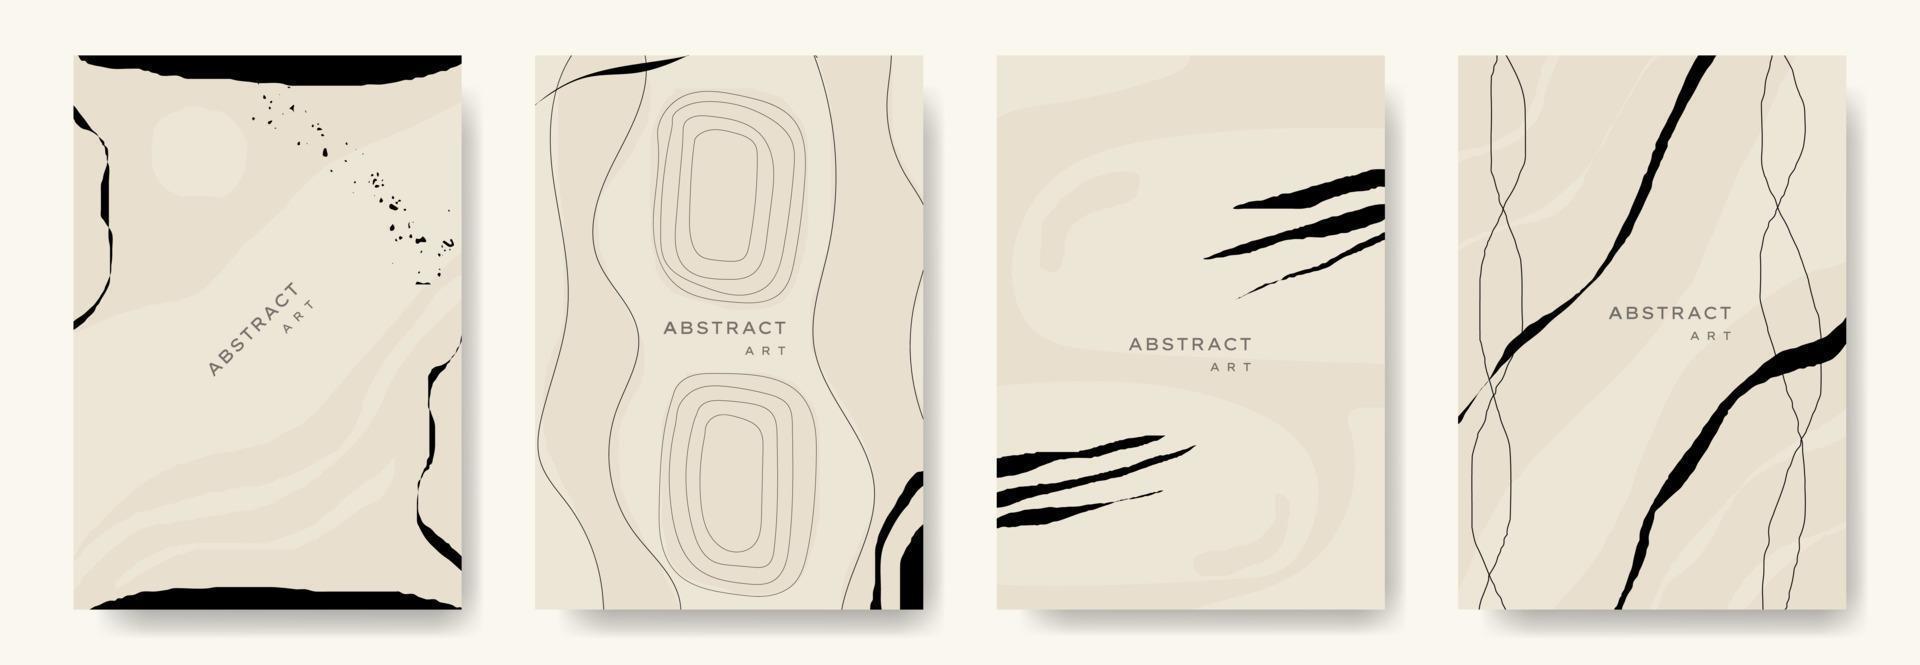 moderne abstracte vector backgrounds.minimal trendy stijl. verschillende vormen opzetten ontwerpsjablonen goed voor achtergrondkaart groet behang brochure flyer uitnodiging en andere. vector illustratie